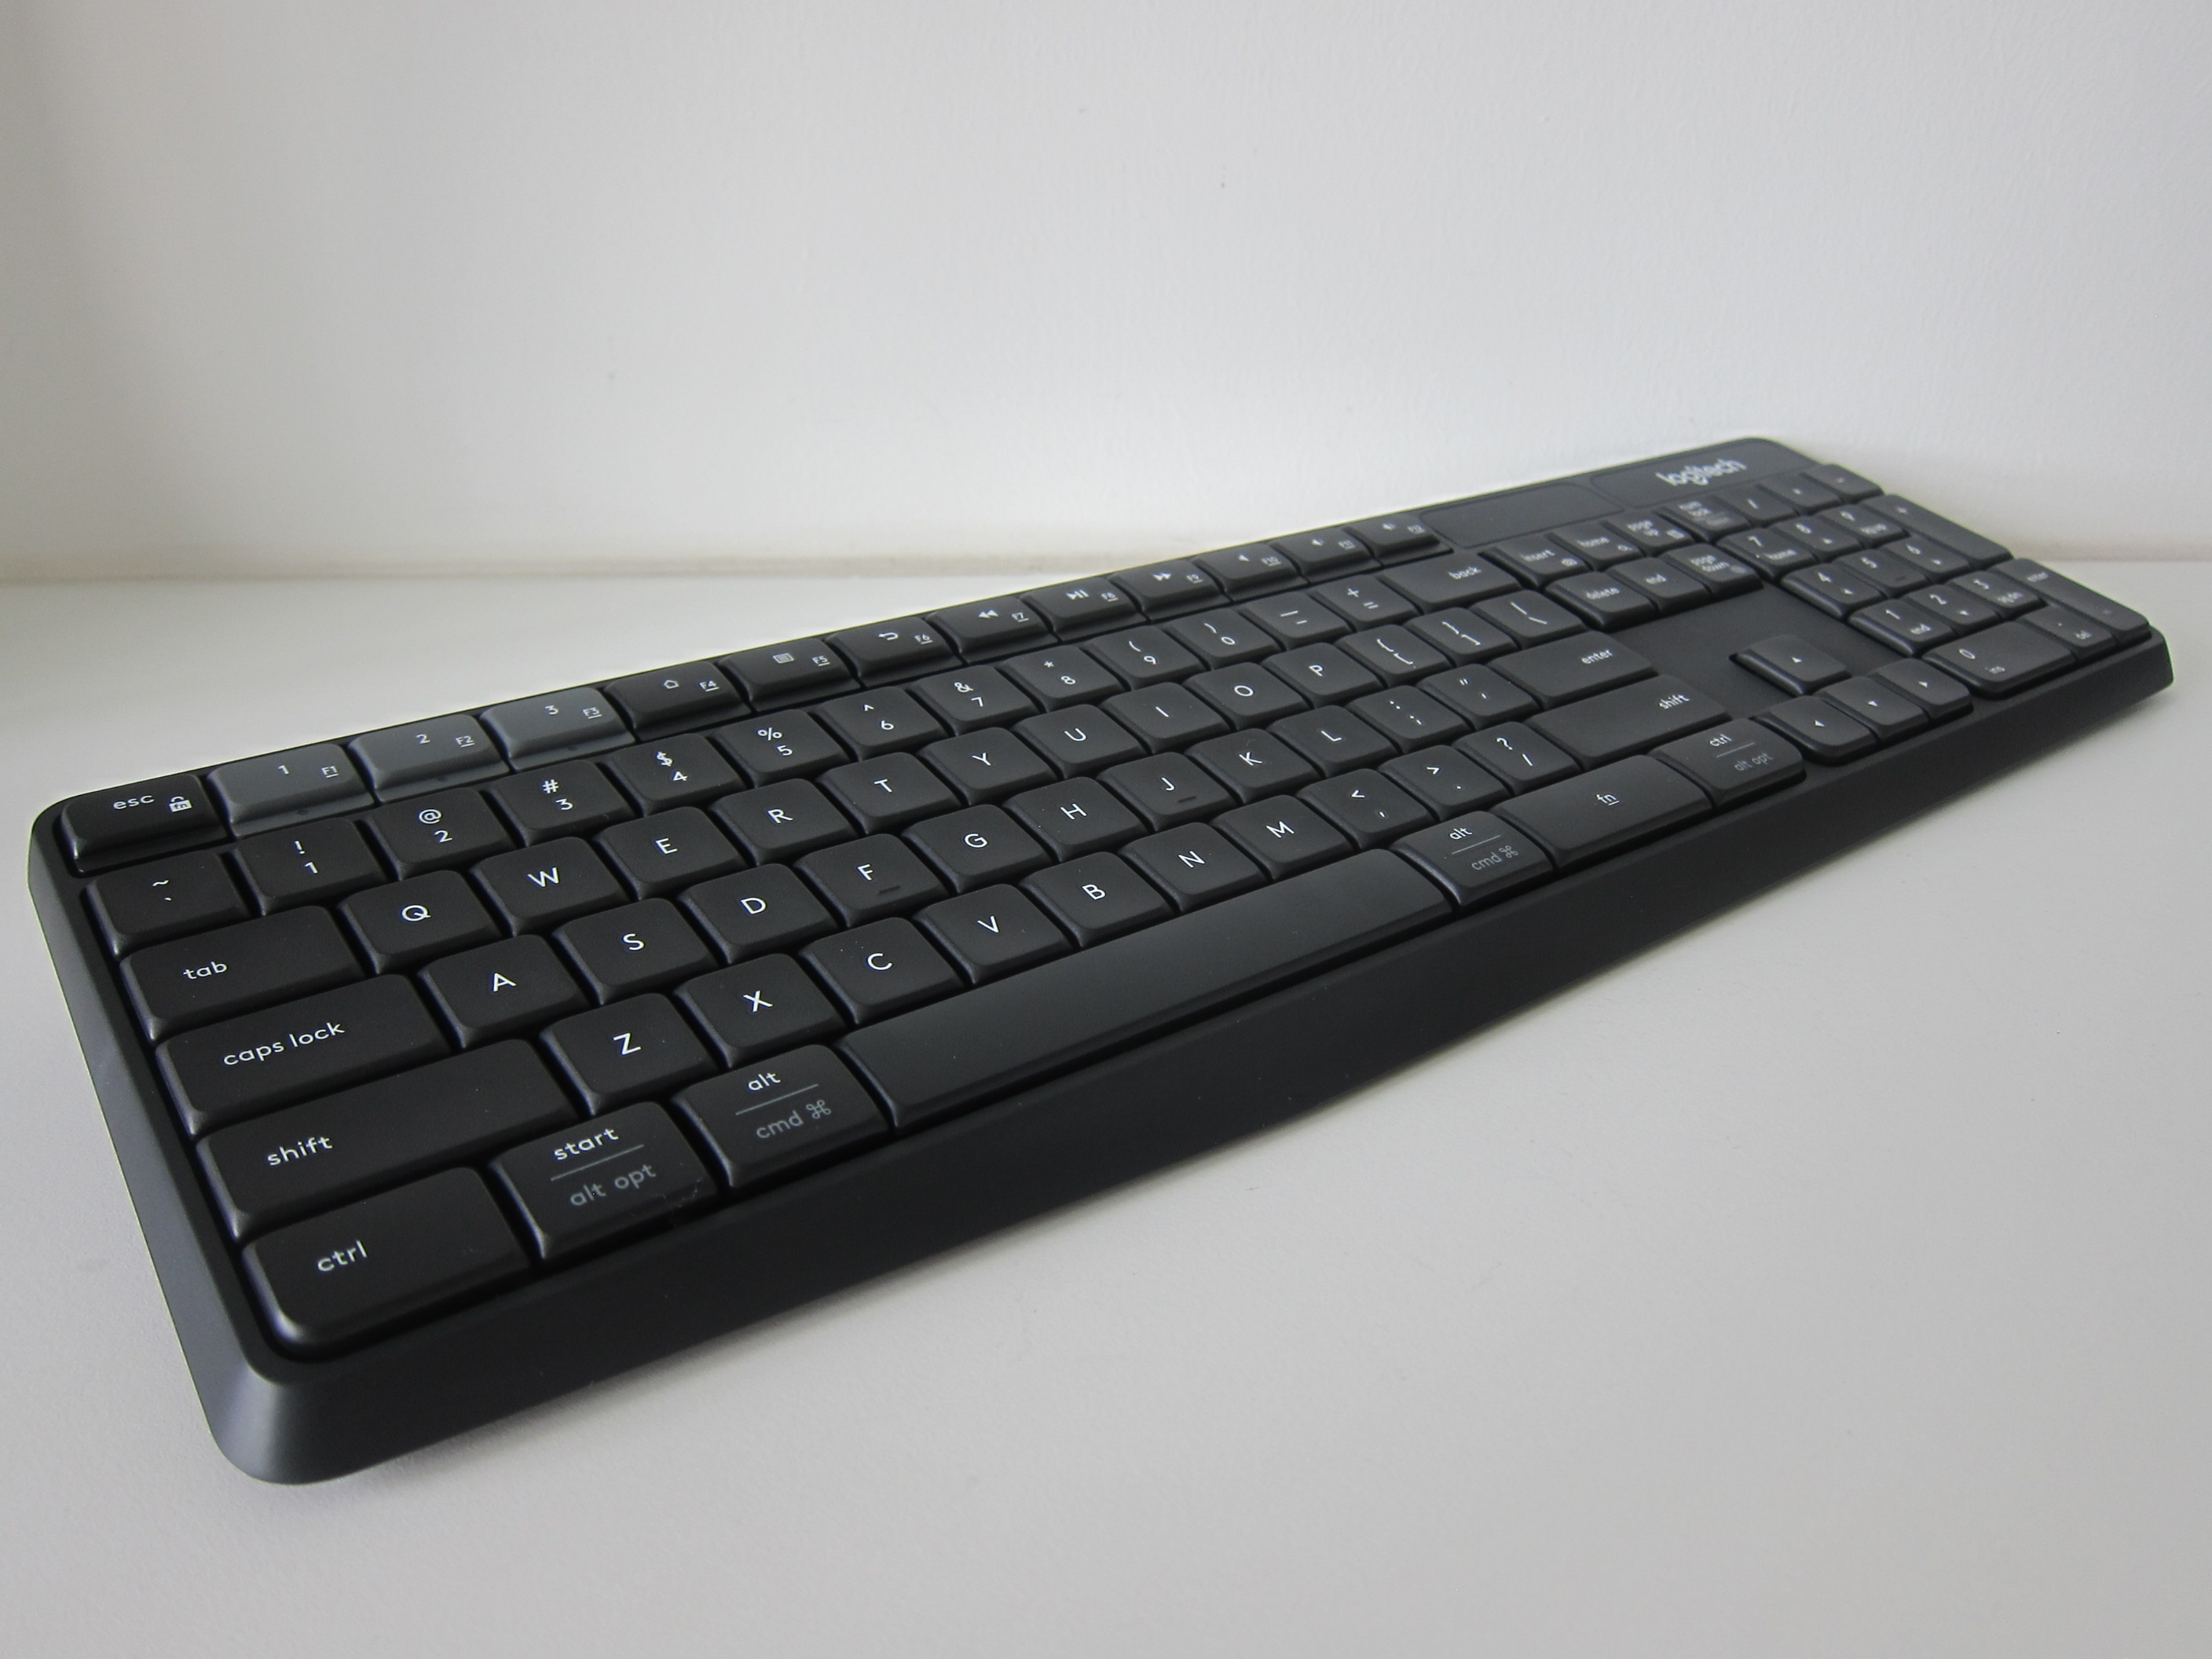 K375s Multi-Device Keyboard Stand Combo « | lesterchan.net